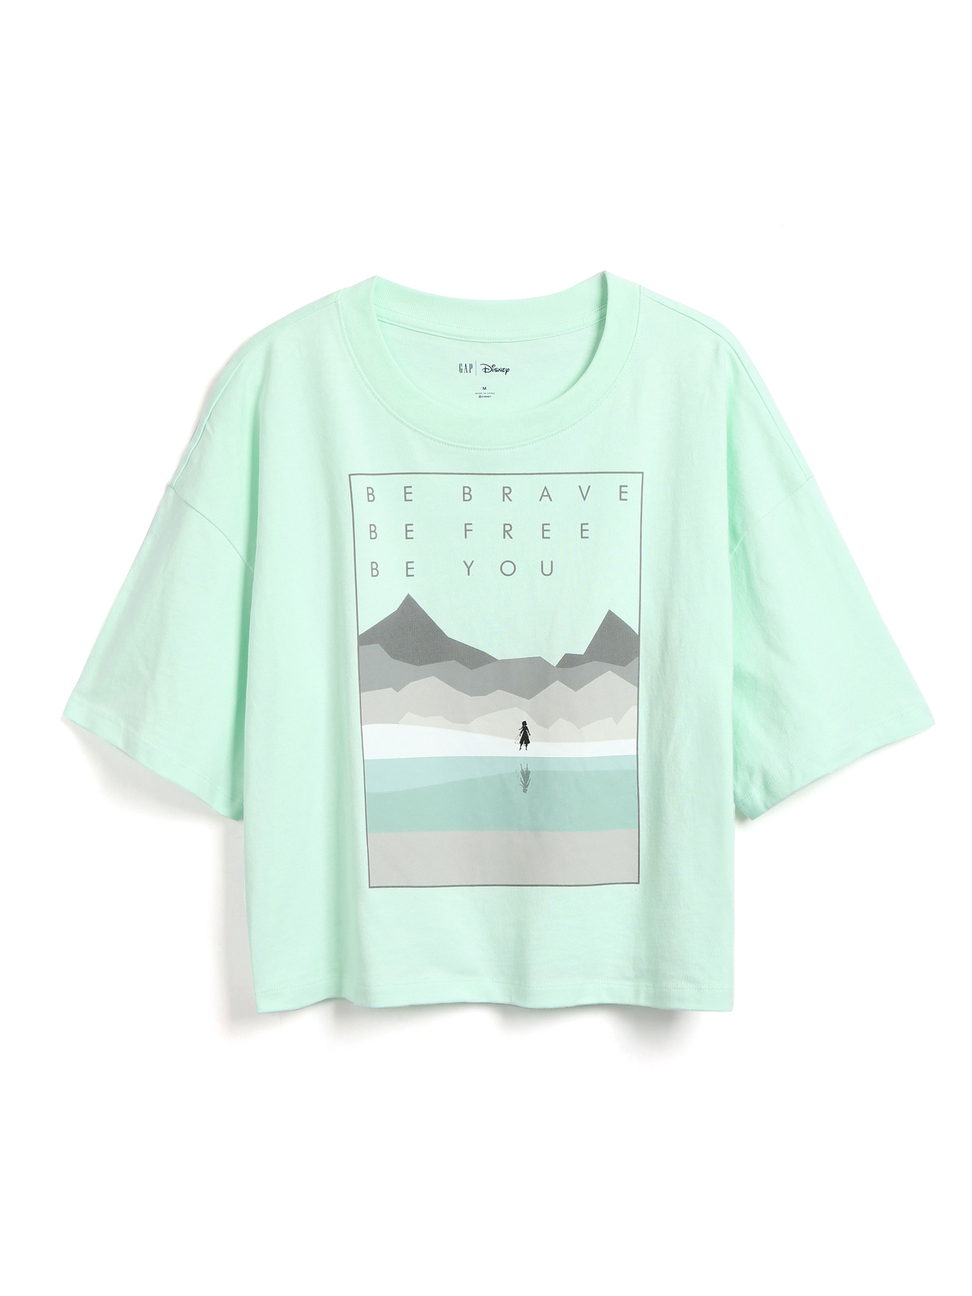 女裝|Gap x Disney迪士尼聯名 冰雪奇緣棉質寬鬆圓領短袖T恤-新鮮薄荷綠